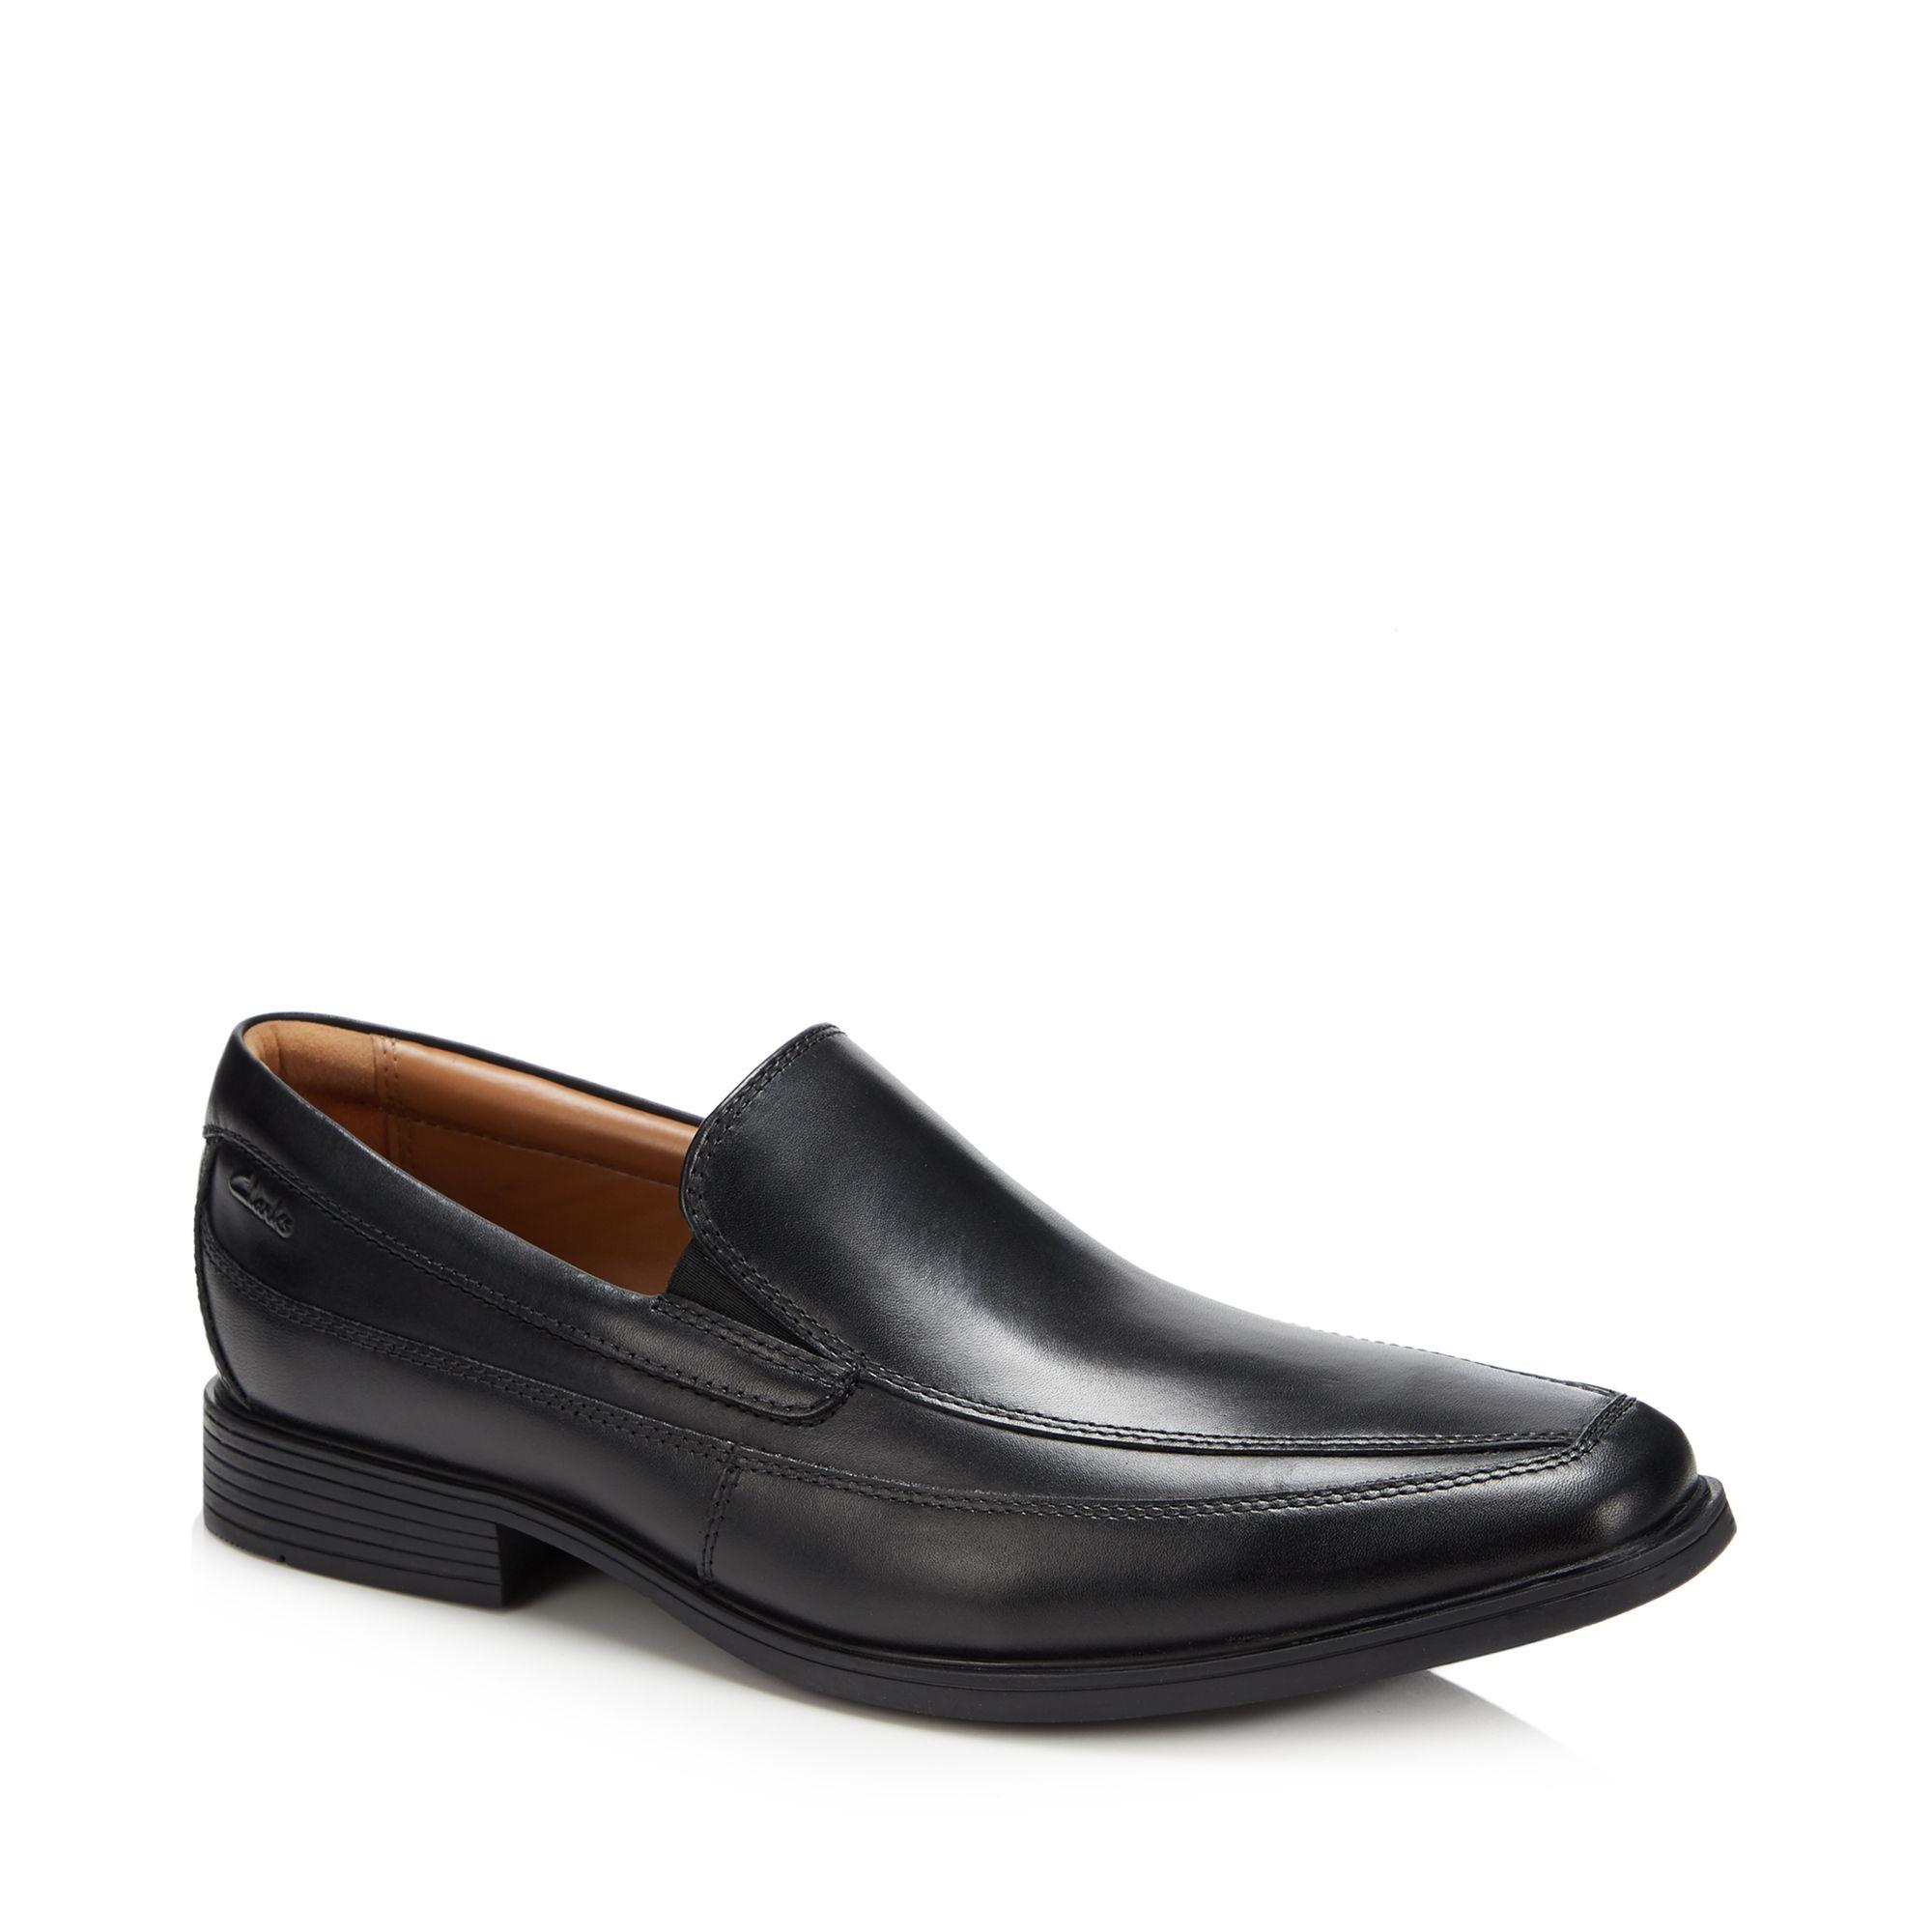 Clarks Men's Leather 'tilden' Slip On Shoes in Black for Men - Lyst